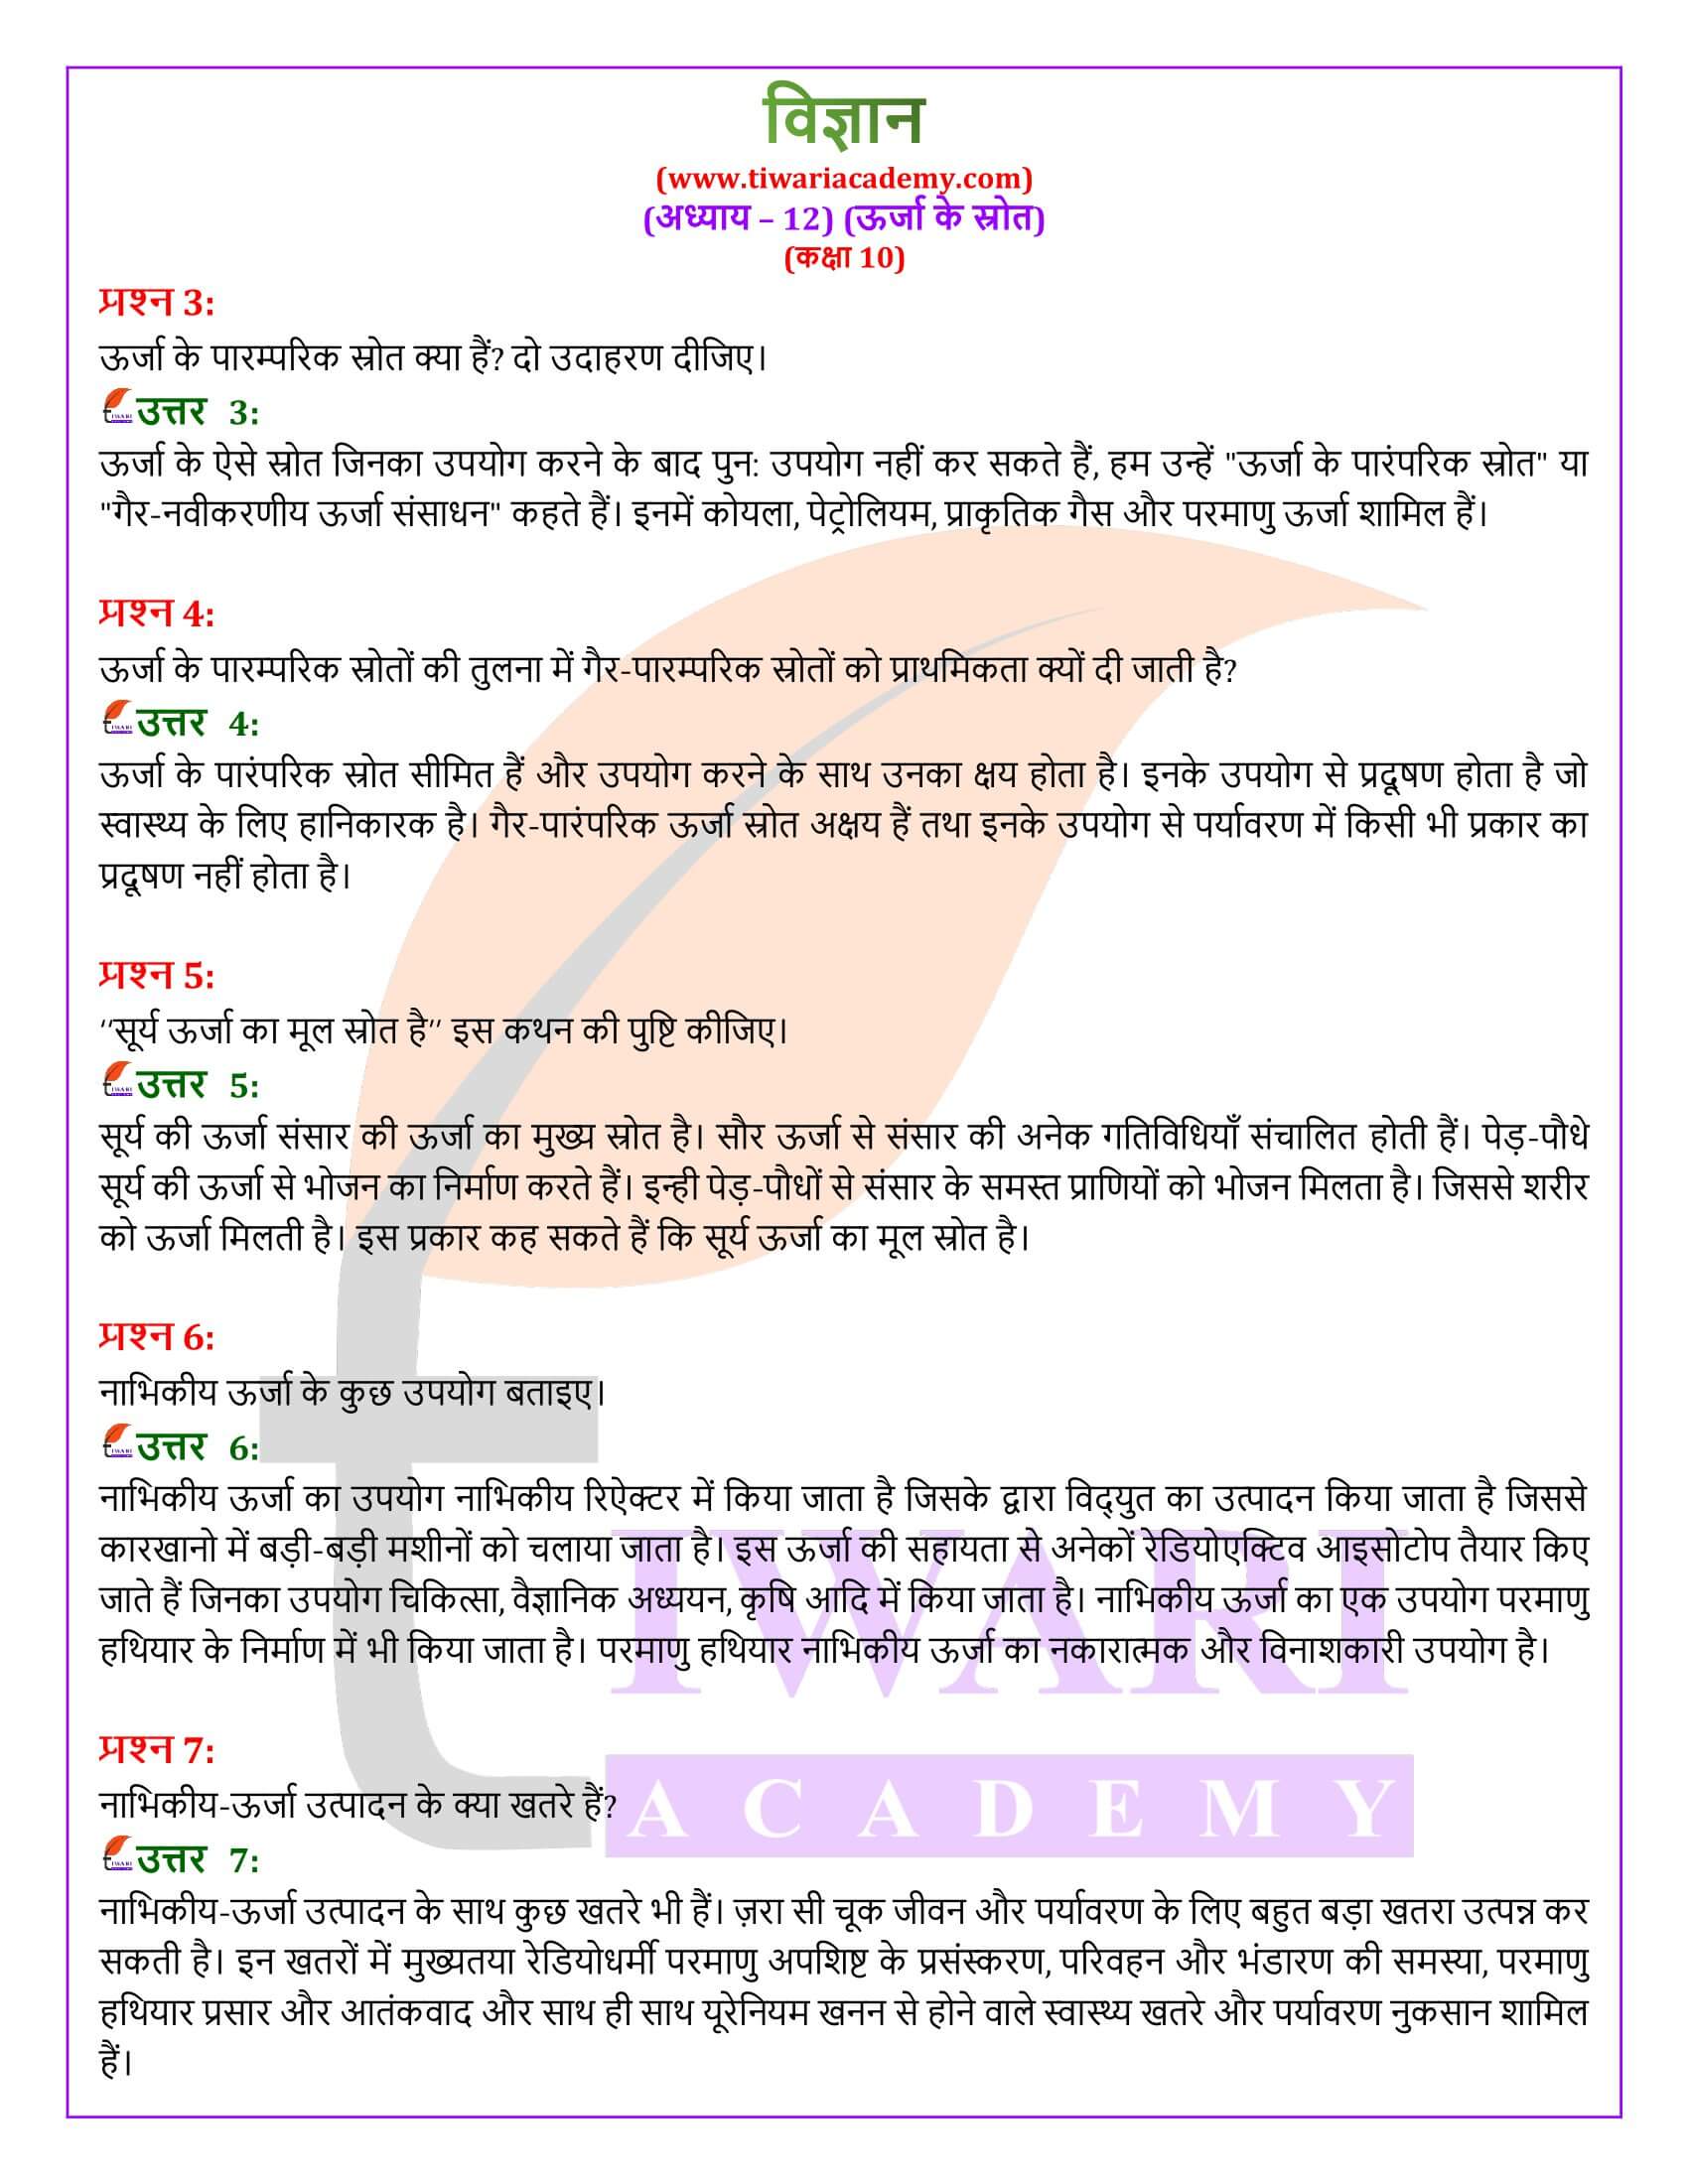 NIOS के लिए कक्षा 10 विज्ञान अध्याय 12 हिंदी मीडियम में